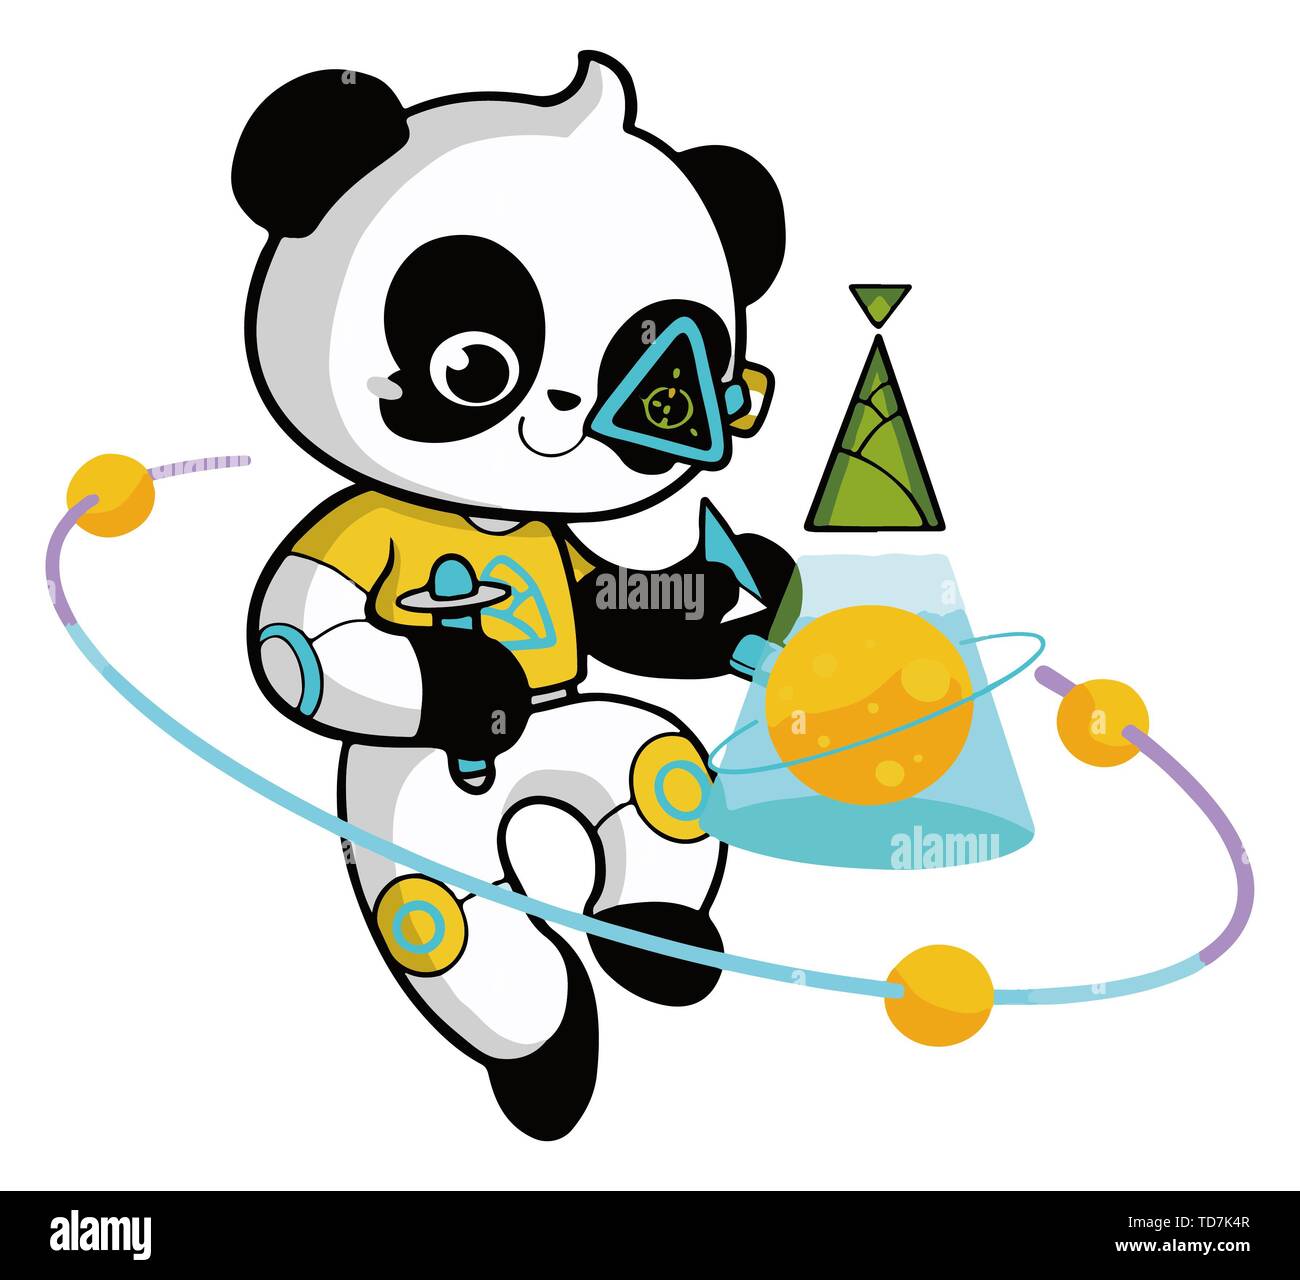 Peking, China. 13. Juni, 2019. Dieses Bild von der China Panda internationales Image Design Wettbewerb Organisationskomitee zeigt die ausgewählte Panda Bild 'Up'. Designer und Künstler aus aller Welt waren zum Wettbewerb eingeladen, ihre Vorstellungskraft und ihre Fähigkeiten zu entfalten, ihre eigenen Pandas mit unerwarteten Anschläge, darunter die Panda Bild 'Up' von Wang Tianshi und seine Mannschaftskameraden präsentiert als erste internationale Bild der Riesenpandas ausgewählt wurde zu erstellen". Quelle: Xinhua/Alamy leben Nachrichten Stockfoto